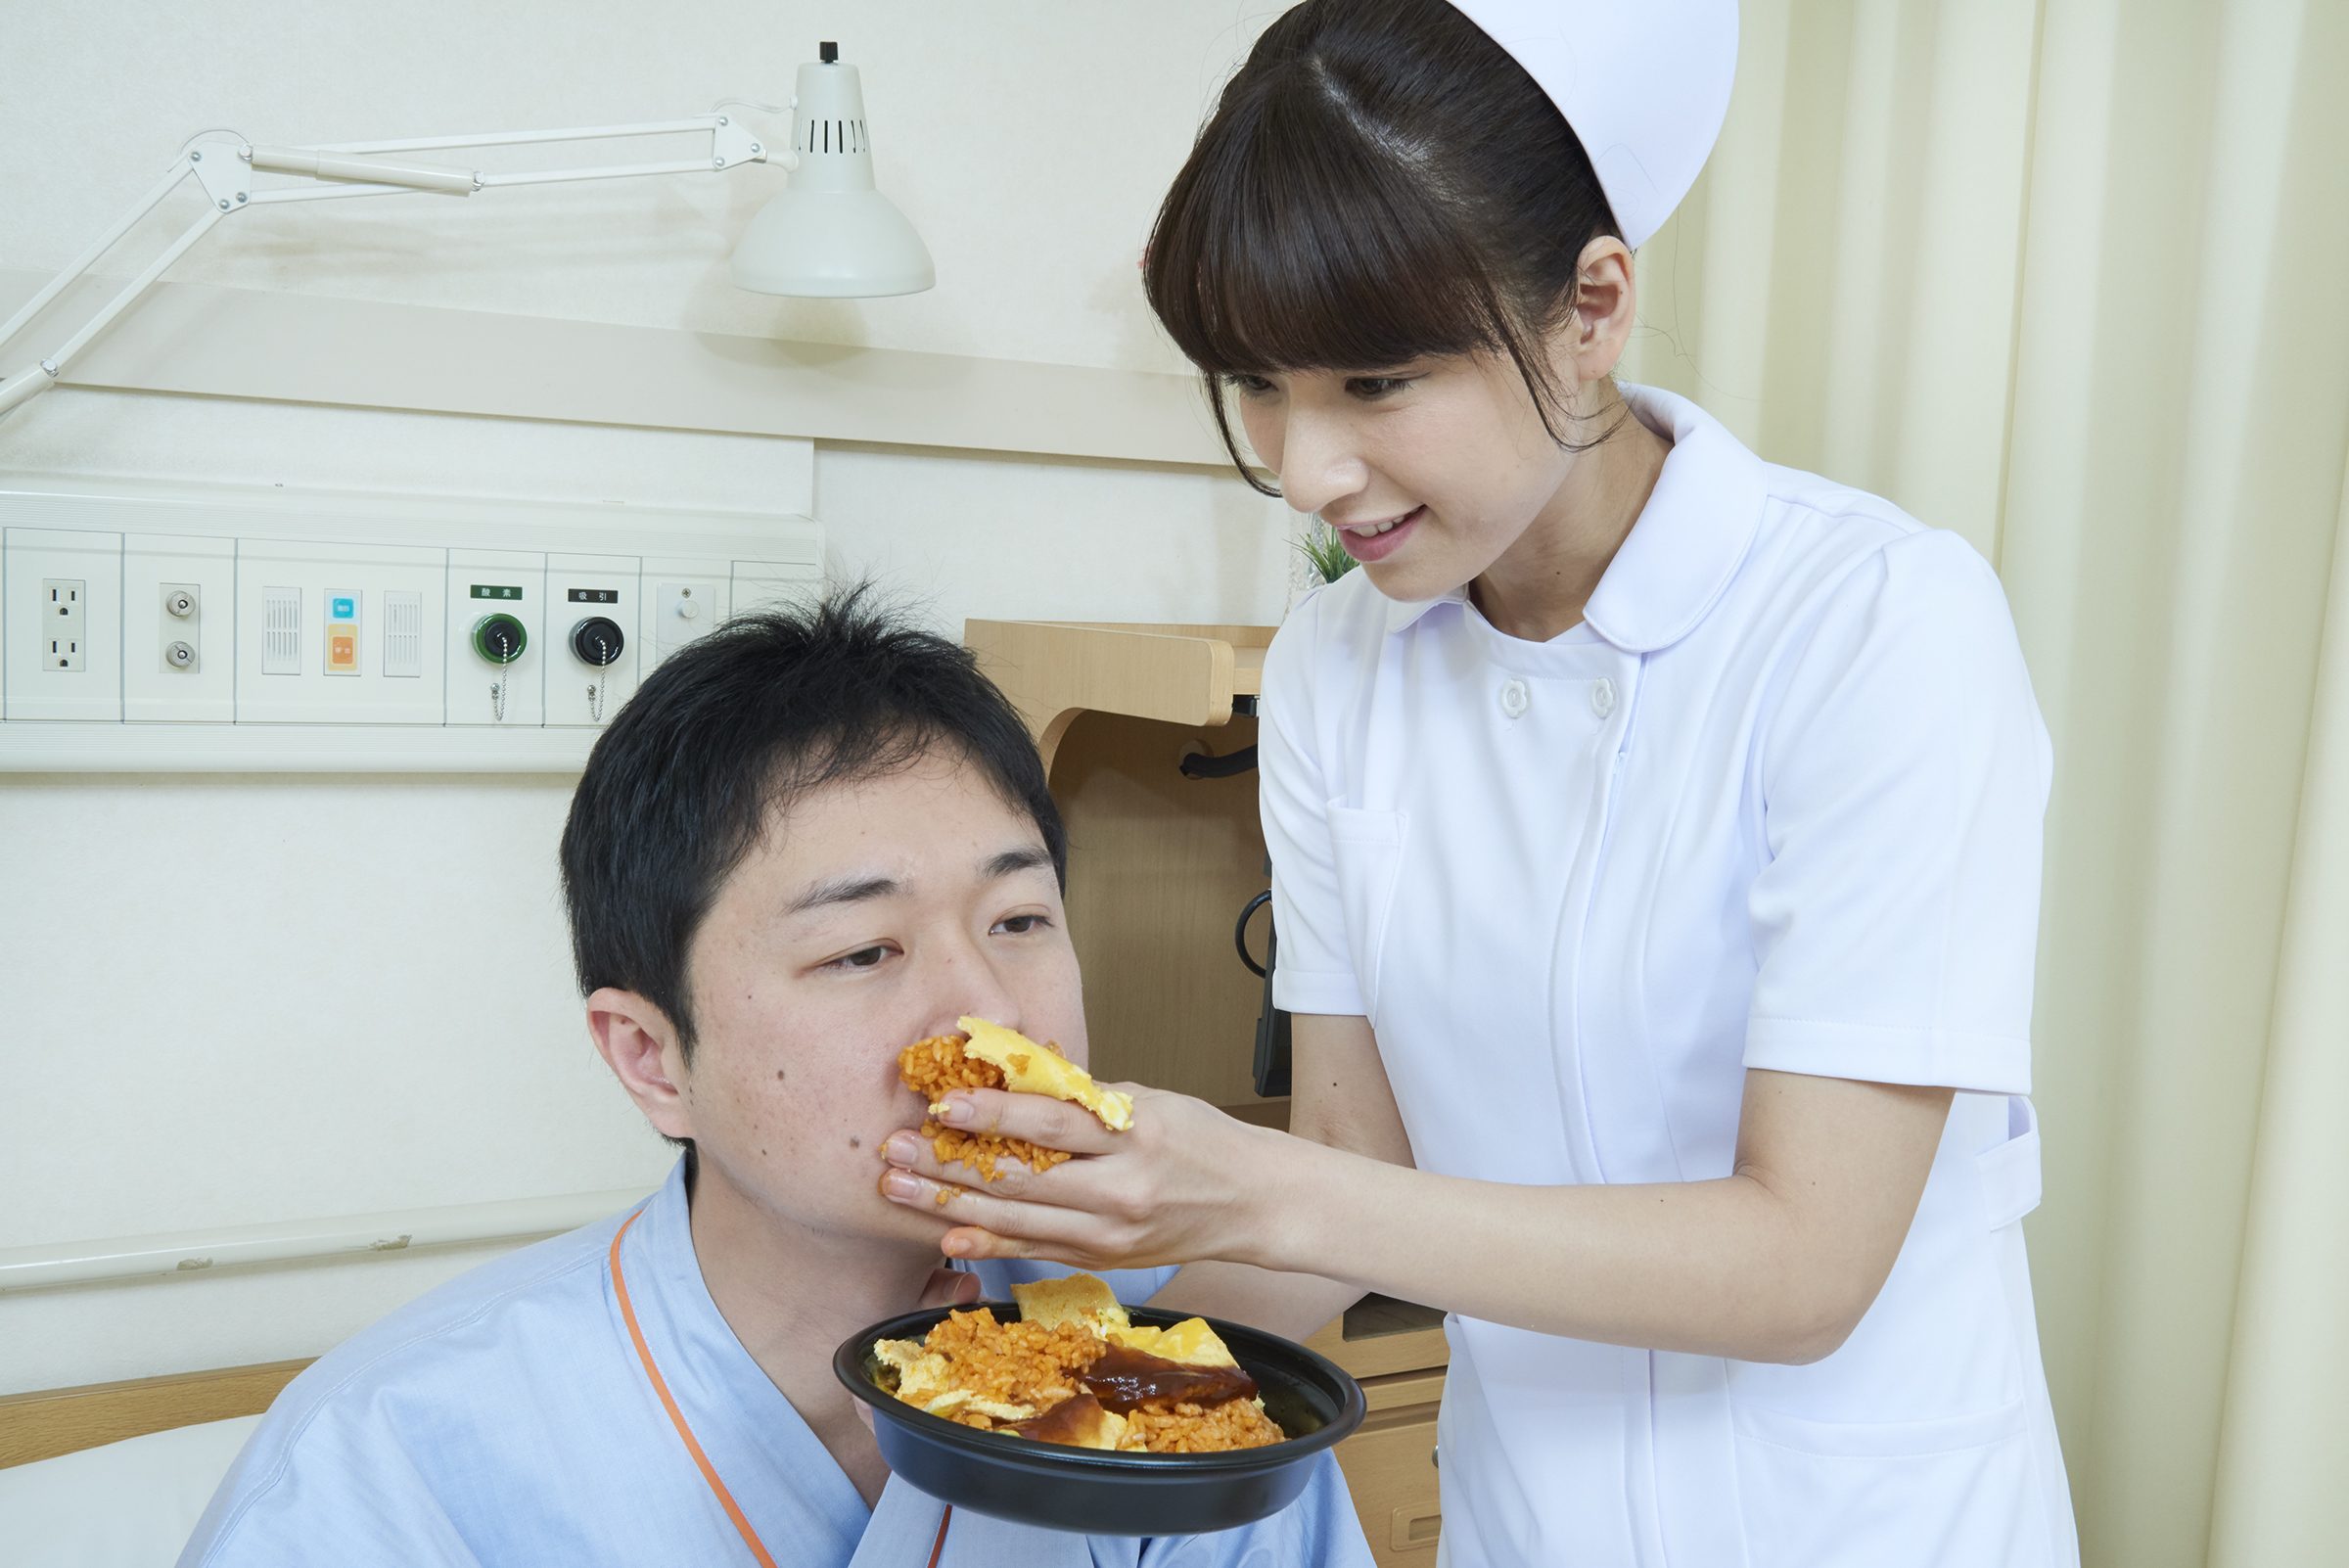 患者に手づかみでオムライスを食べさせる看護師 看護師フリー写真素材サイト スキマナース Free Download Nude Photo Gallery